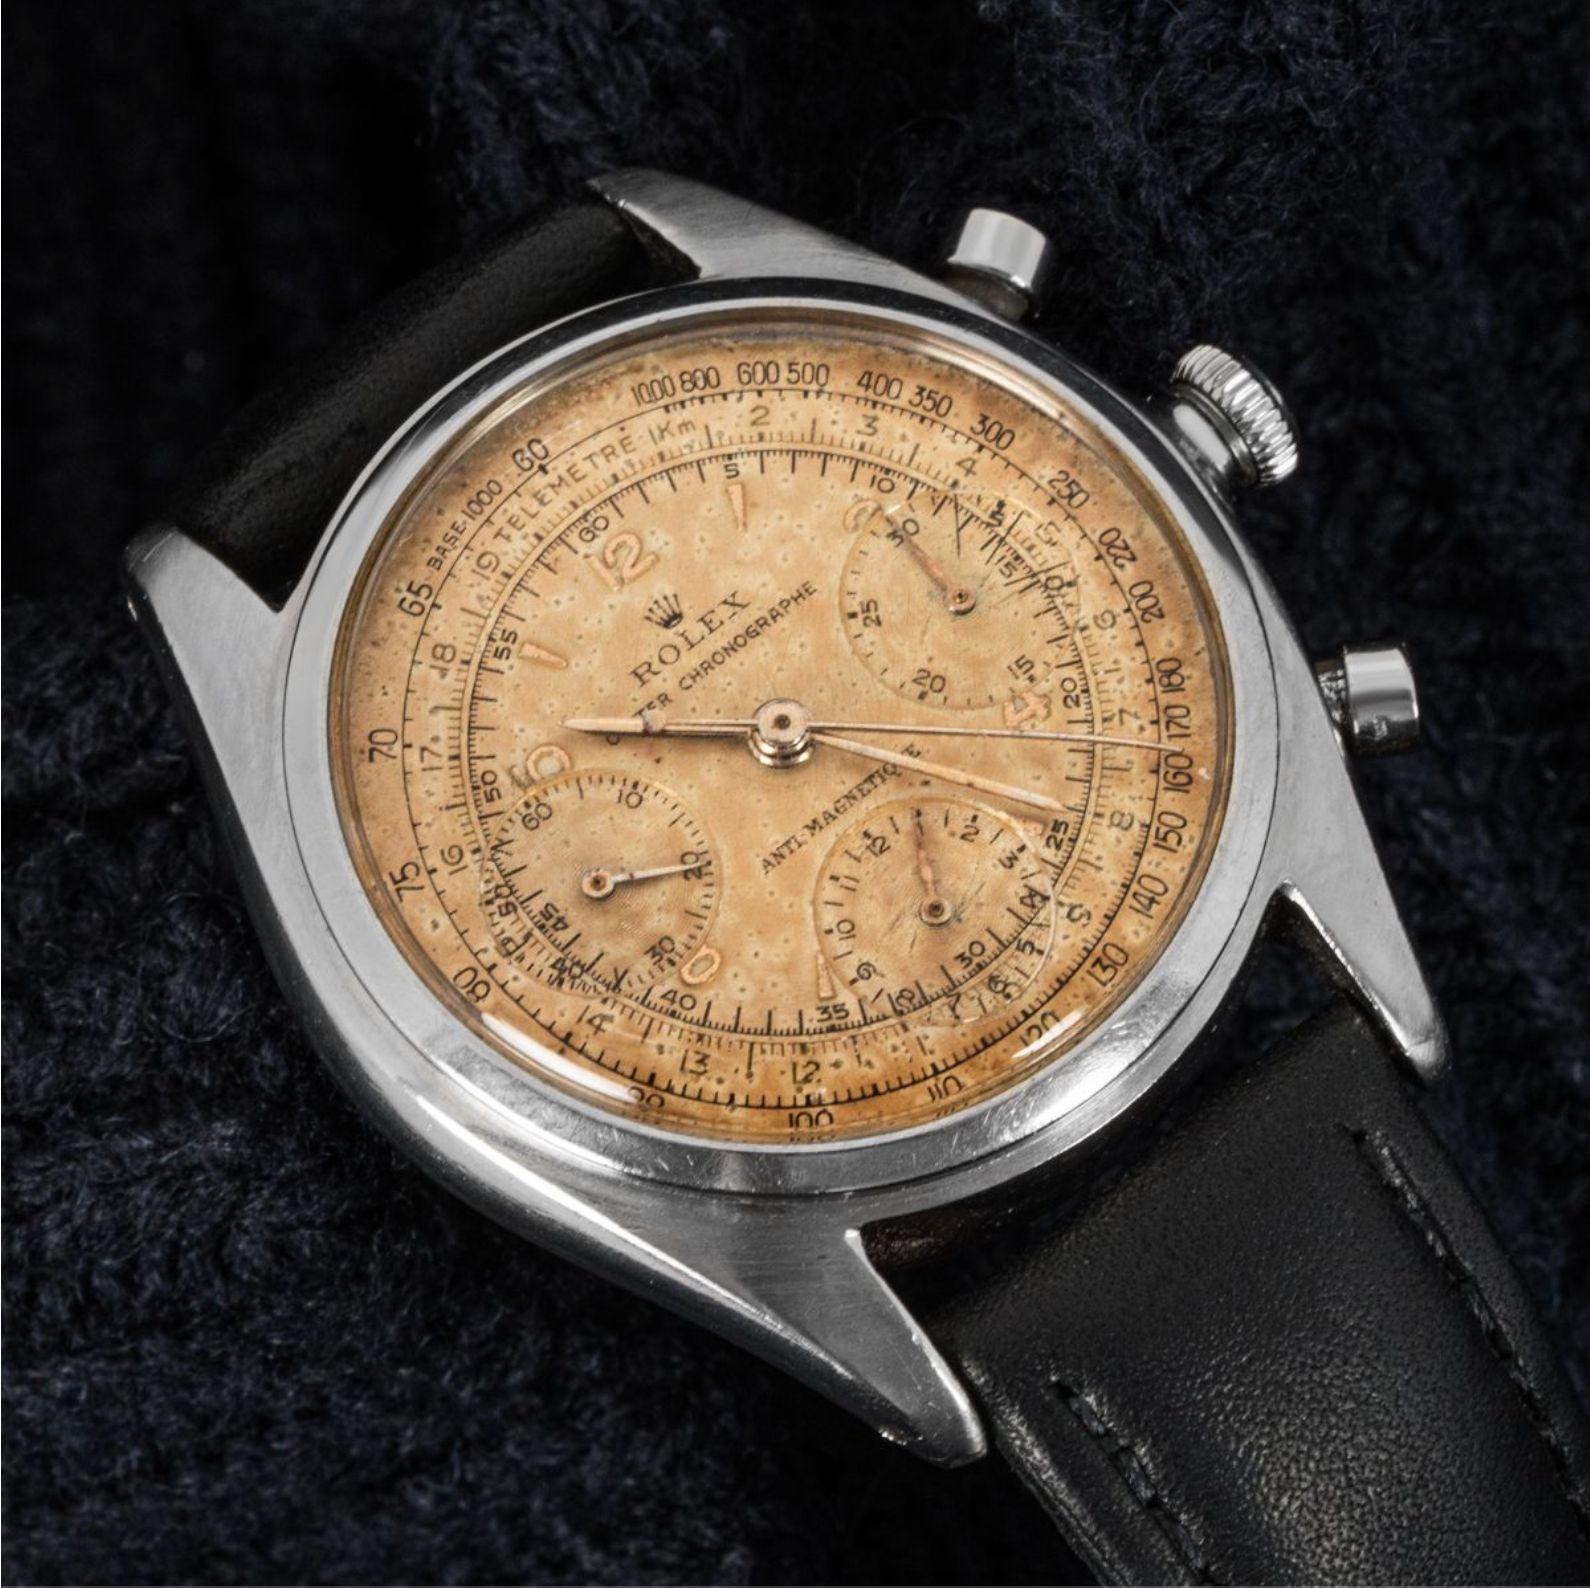 Datant des années 1940, ce Rolex Chronographe en acier inoxydable est extrêmement rare. Dotée d'un cadran argenté d'origine (qui a vieilli avec le temps) avec des fonctions comprenant un chronographe et l'affichage de la petite seconde. Le boîtier